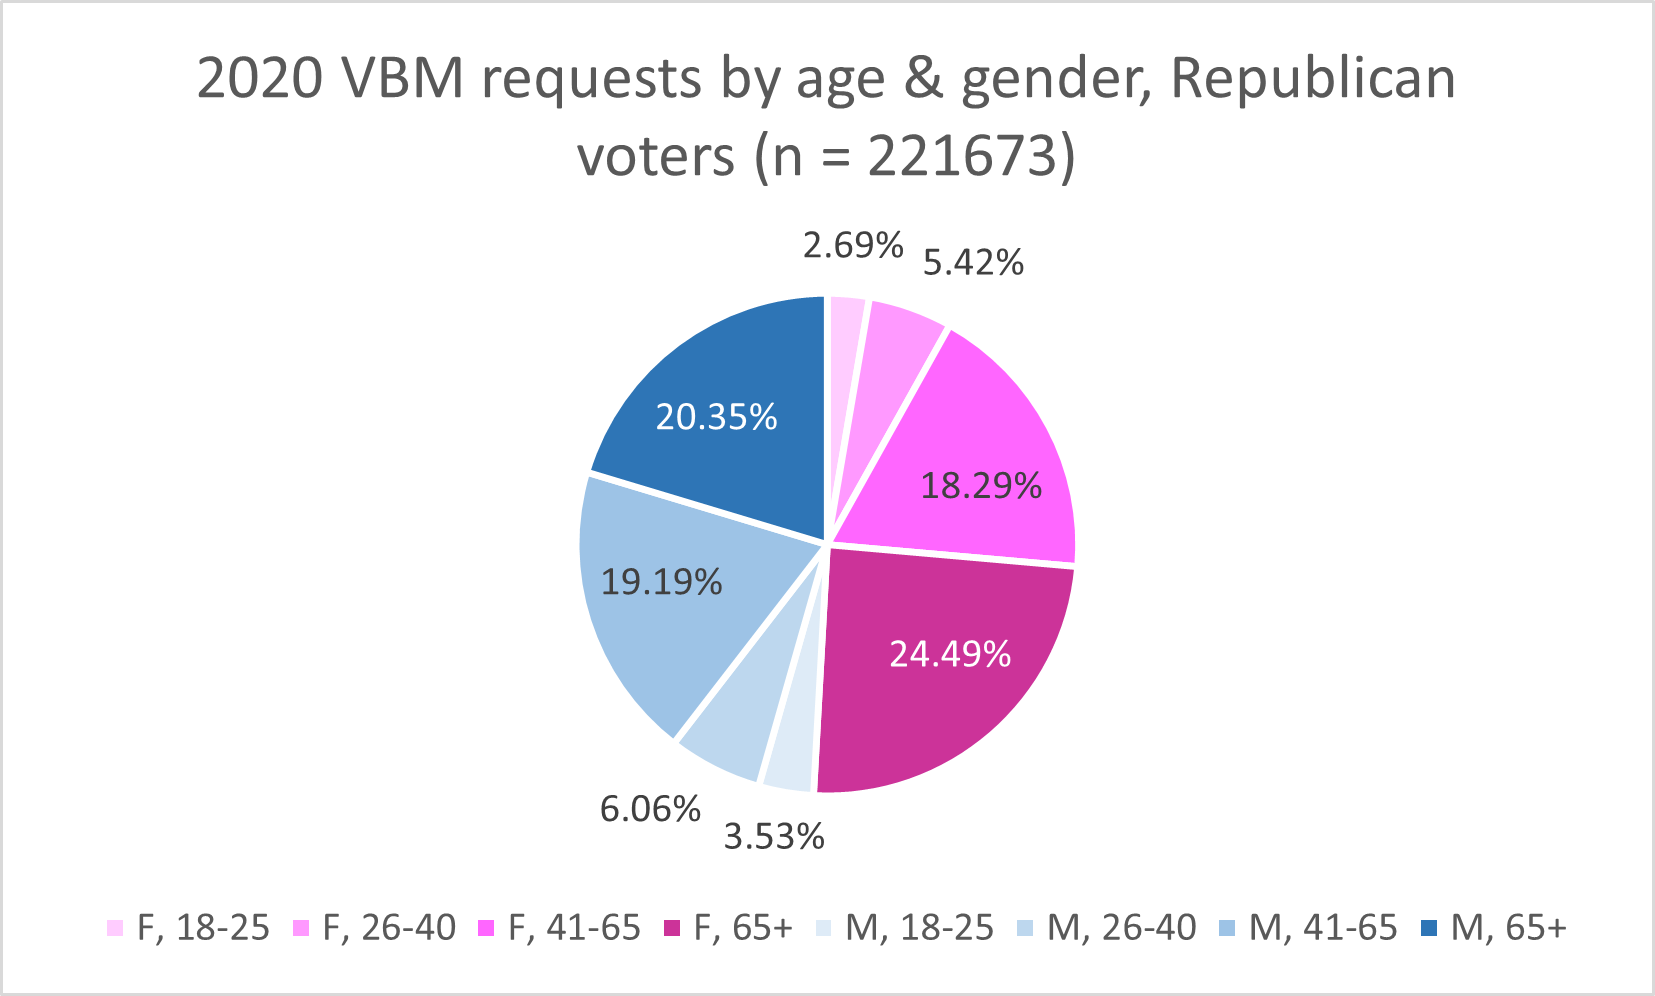 2020 Republican VBM by age